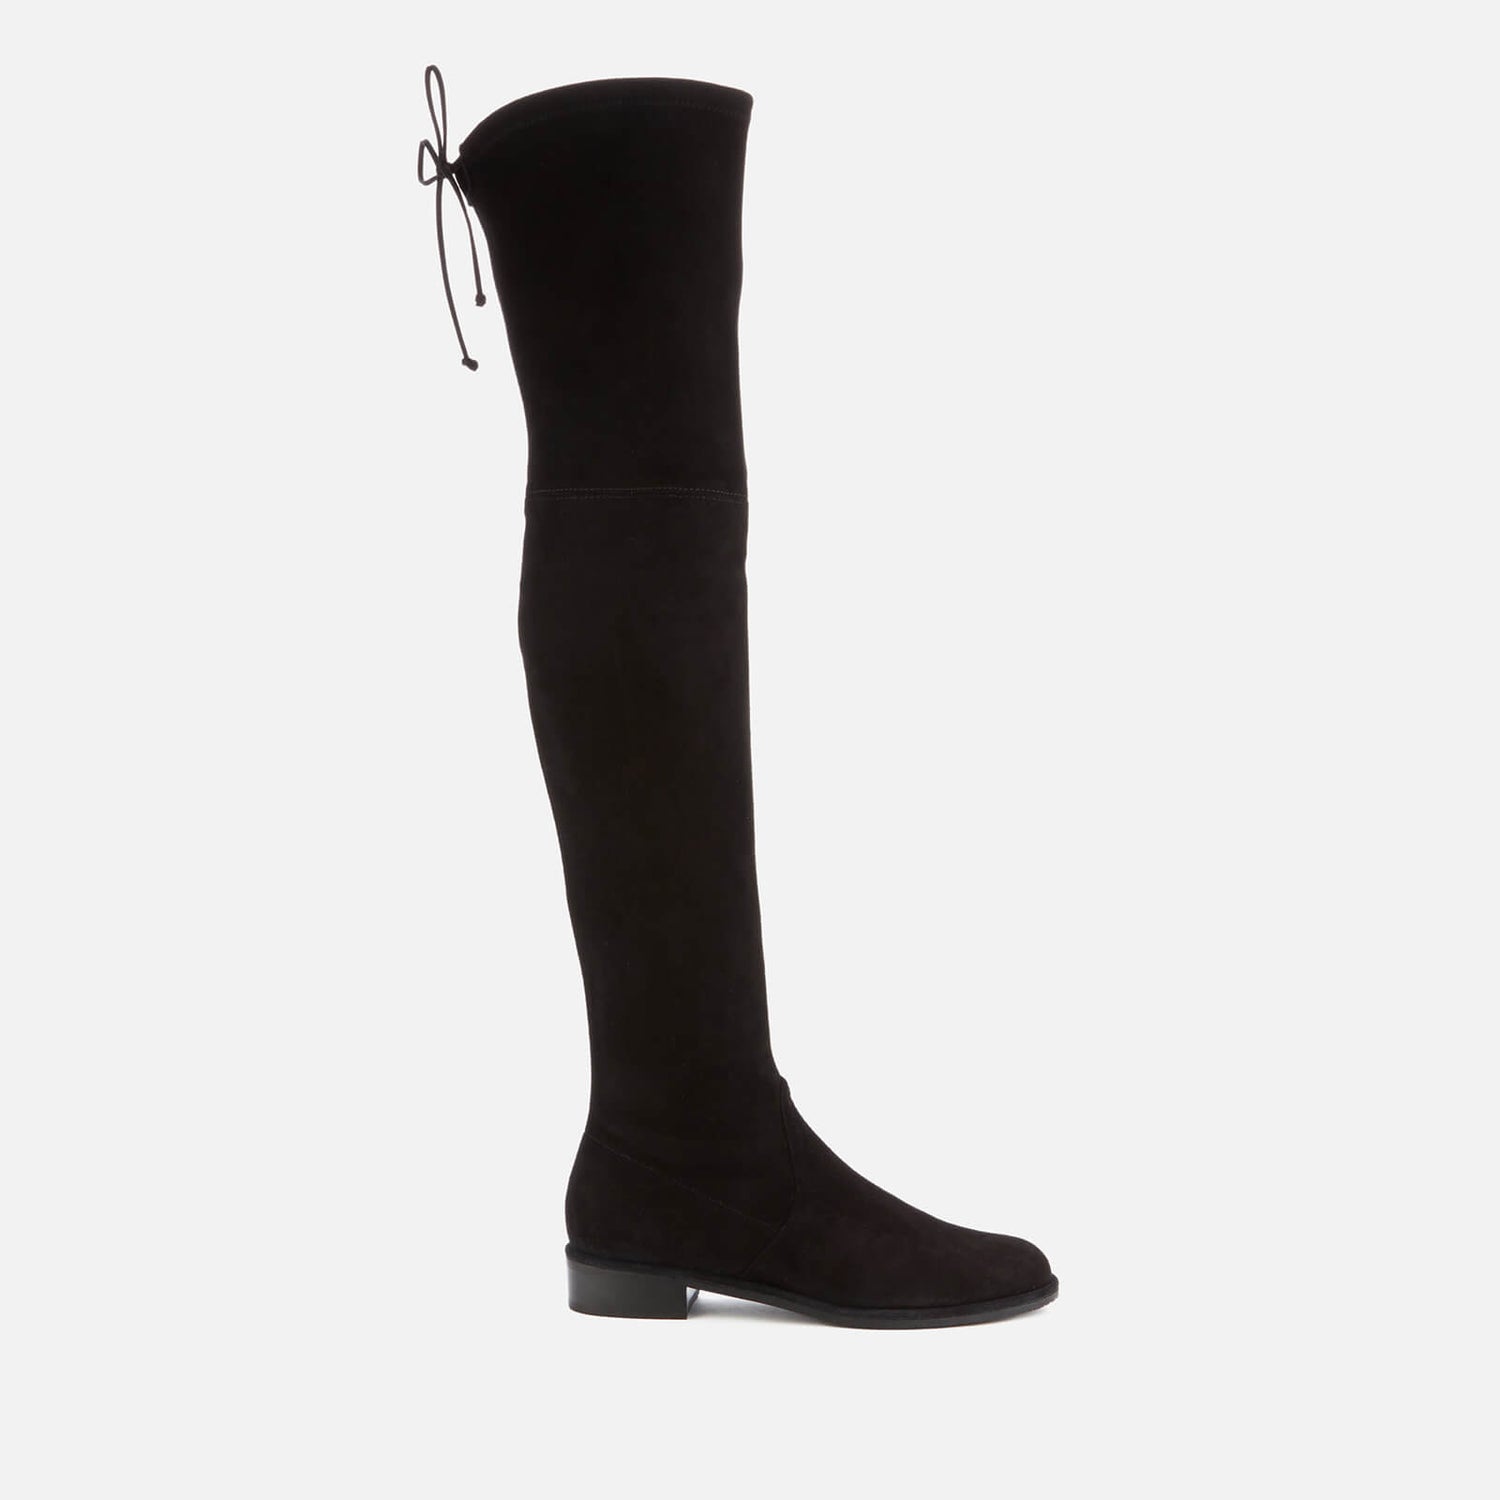 Stuart Weitzman Women's Lowland Suede Over The Knee Flat Boots - Black - UK 3